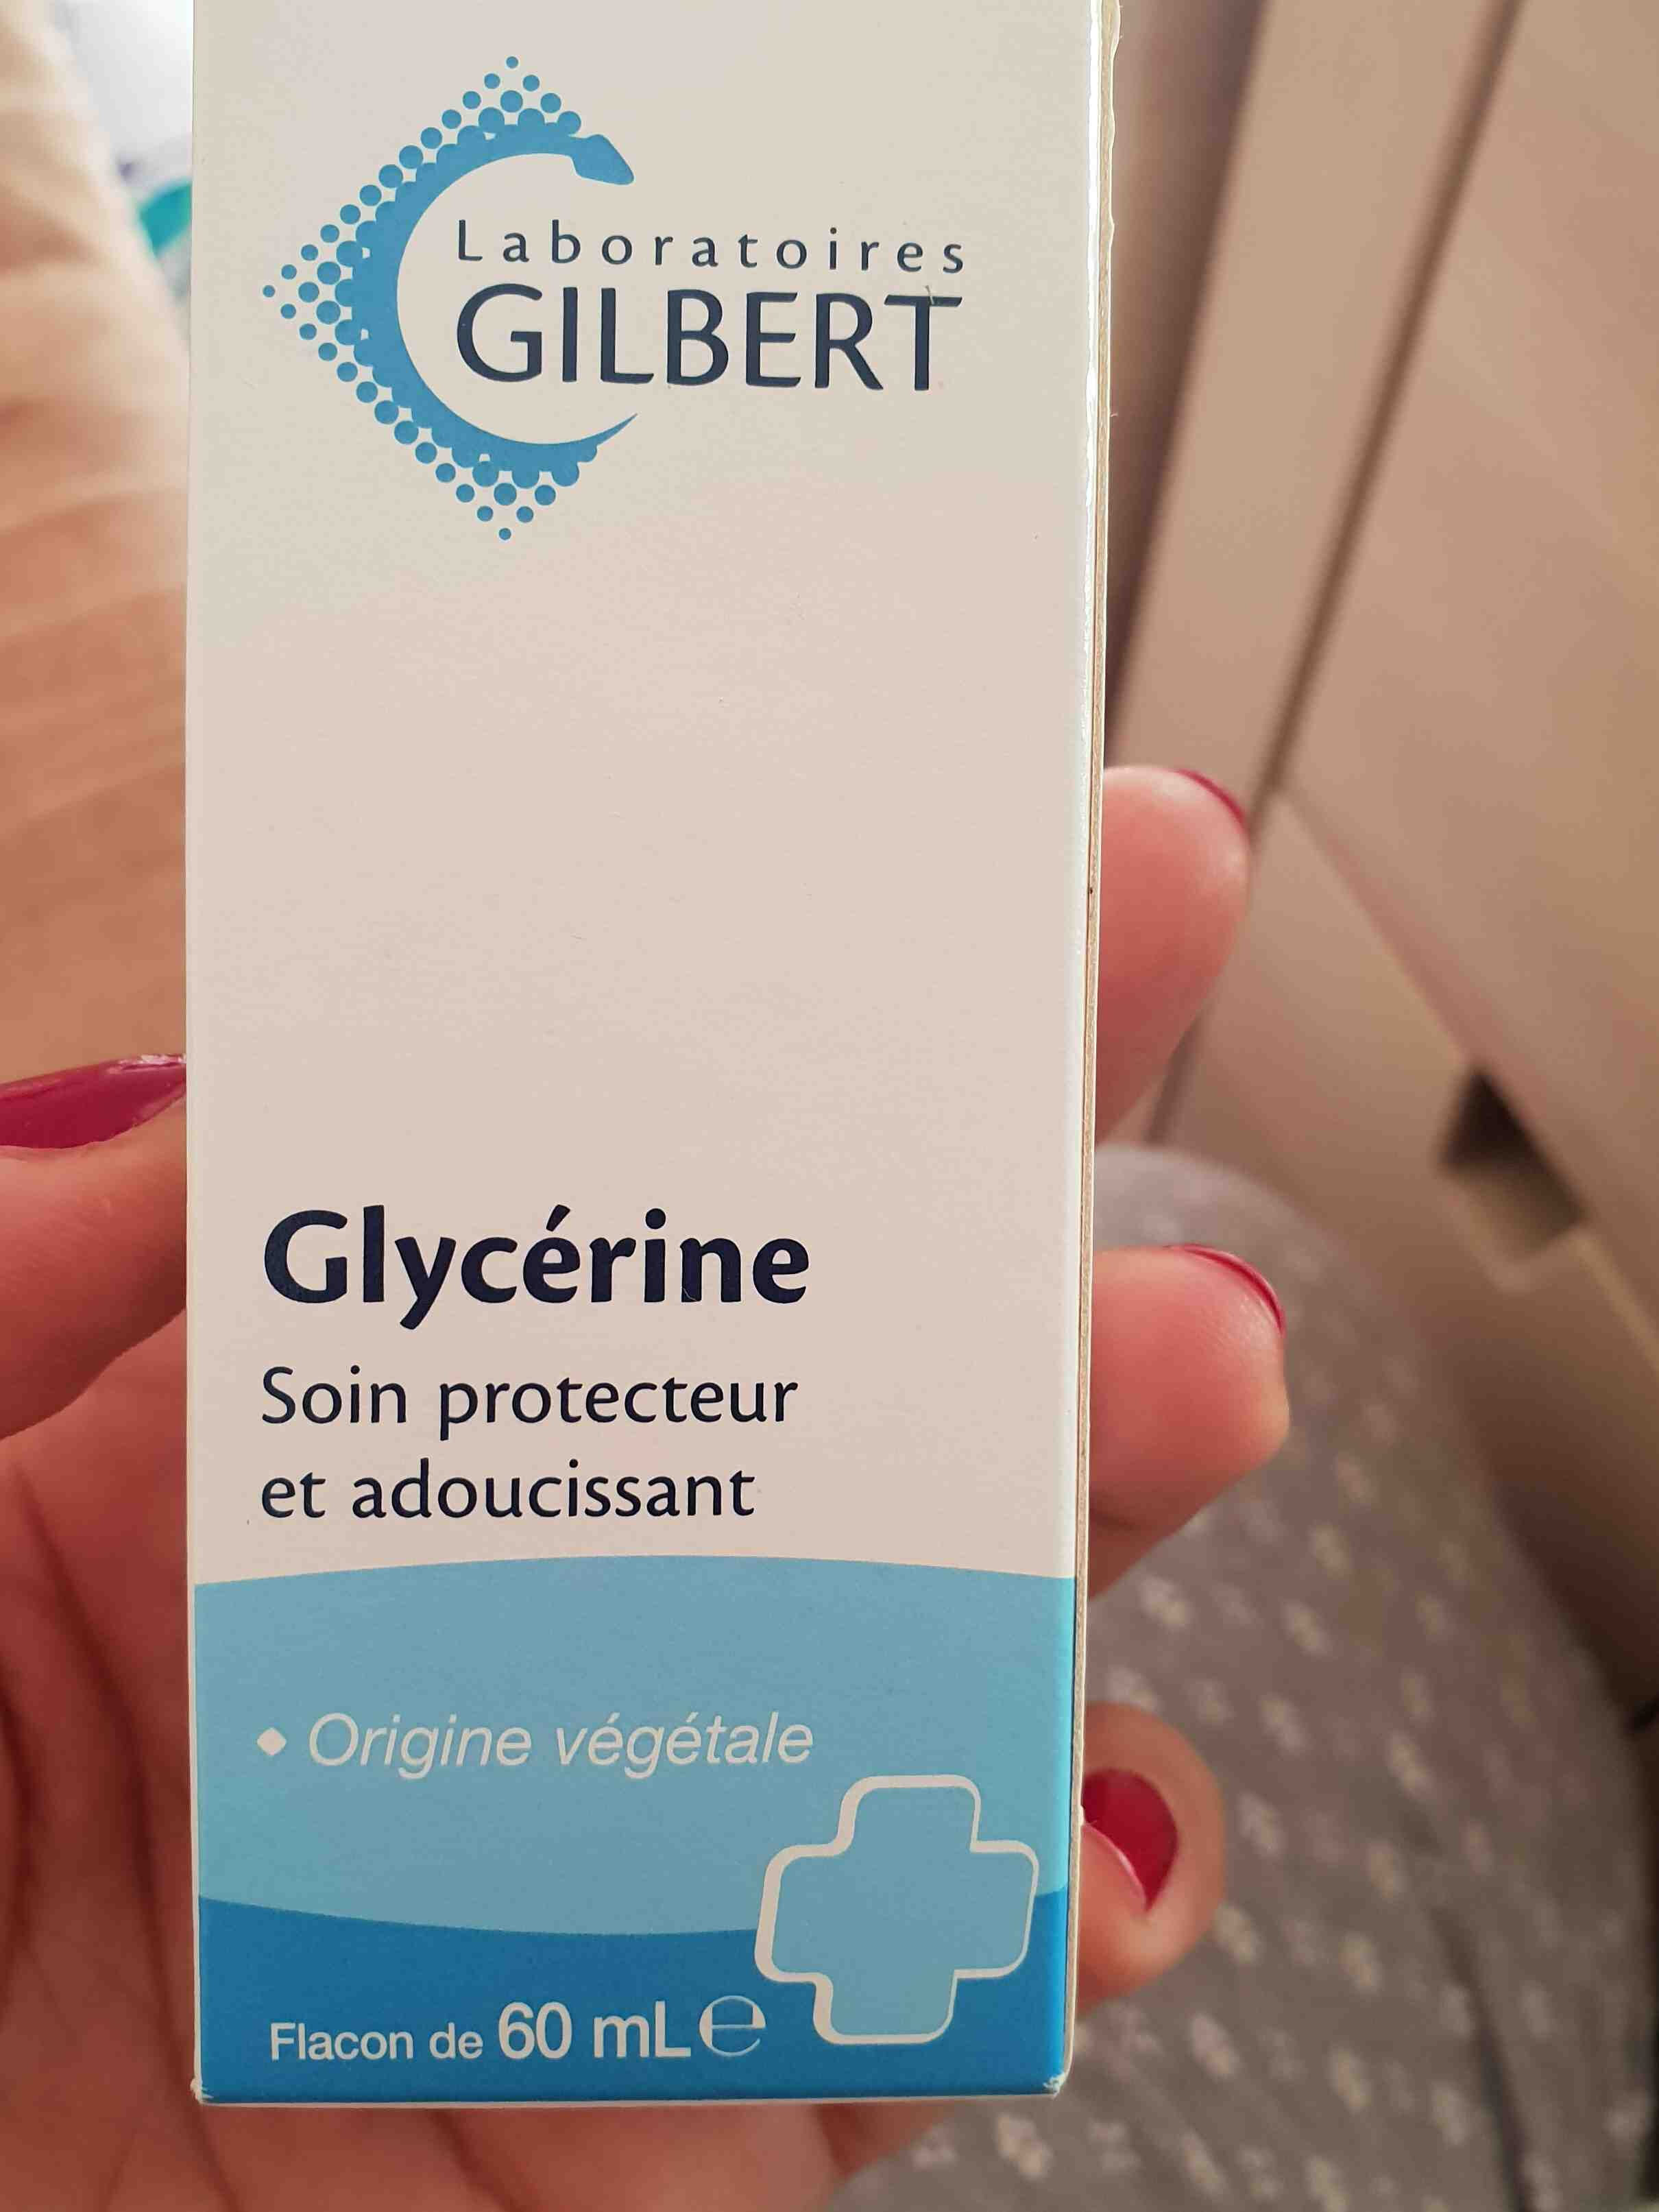 glycerine - Ainesosat - en